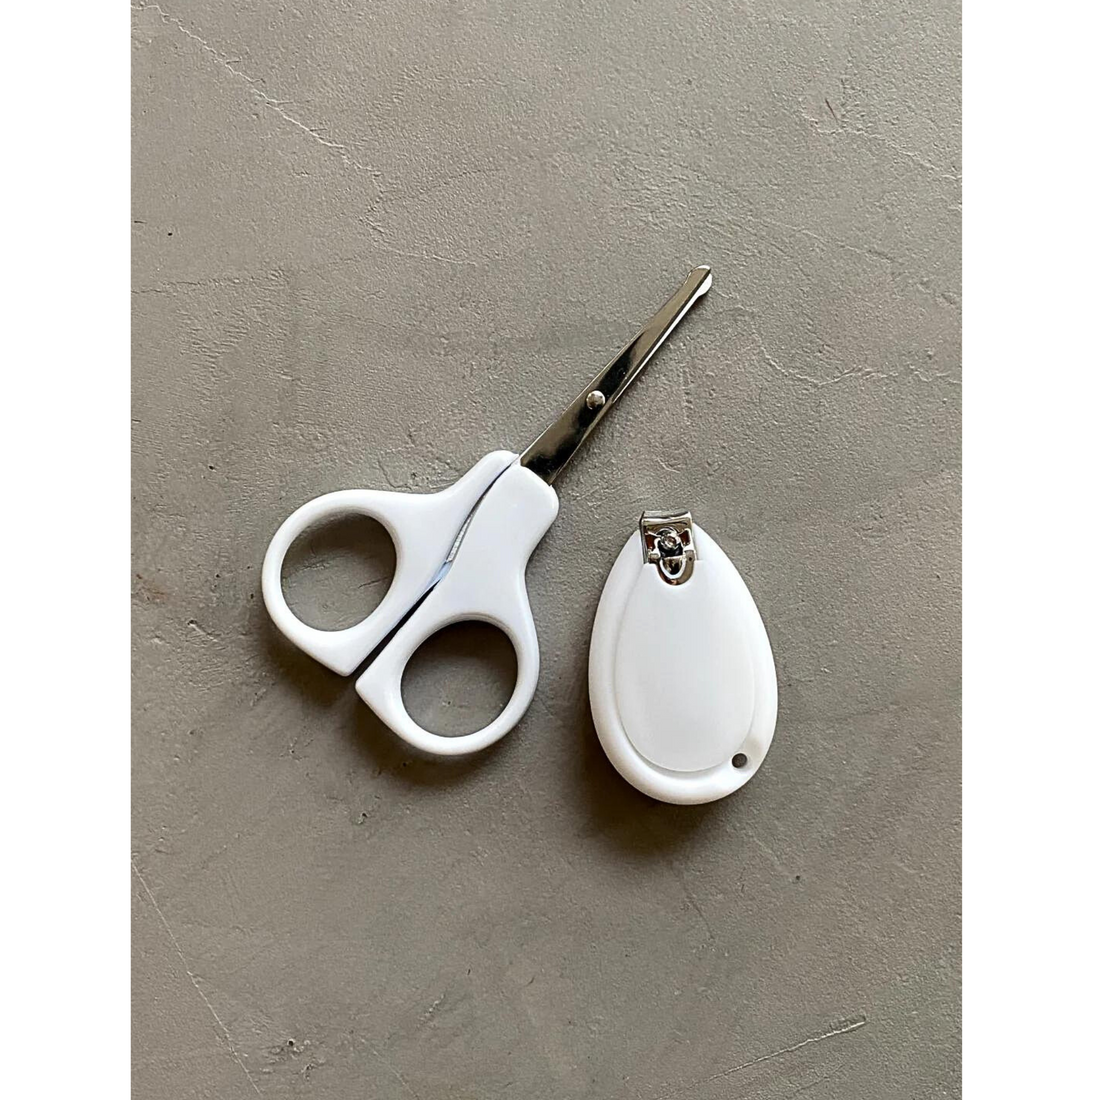 Baby scissors set